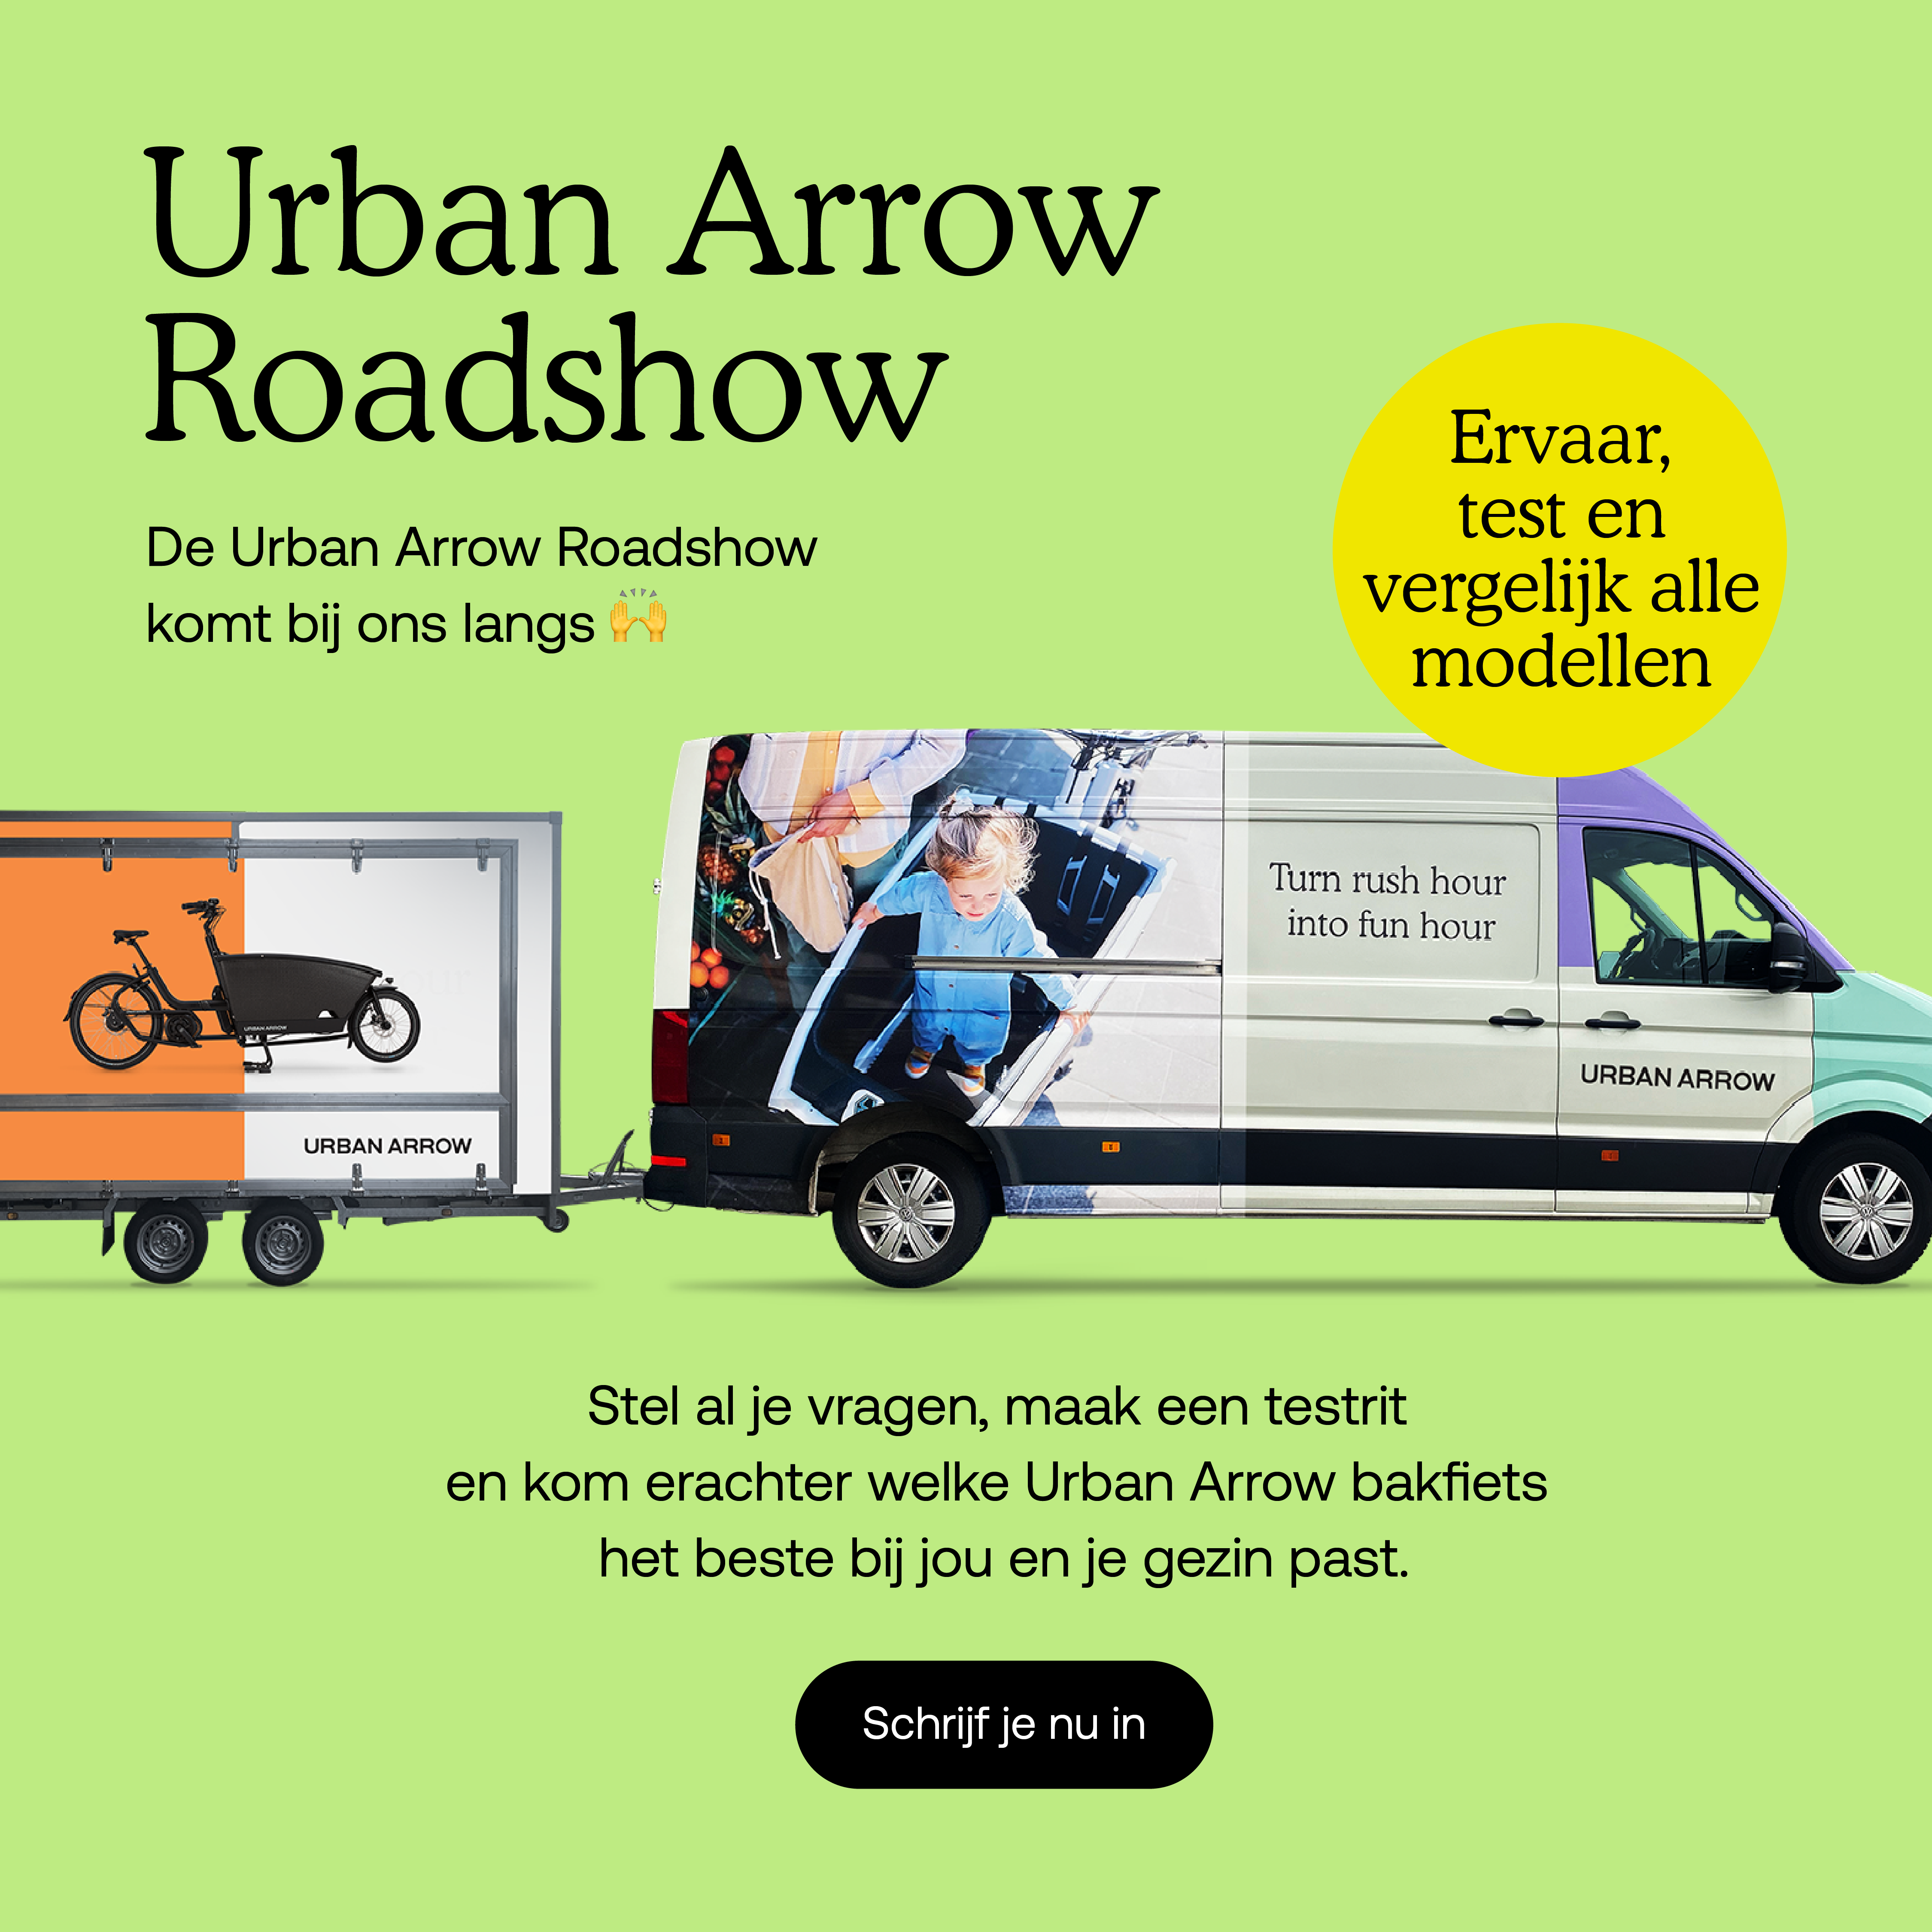 Bike Totaal Krimpen - Urban Arrow - Roadshow - informatie